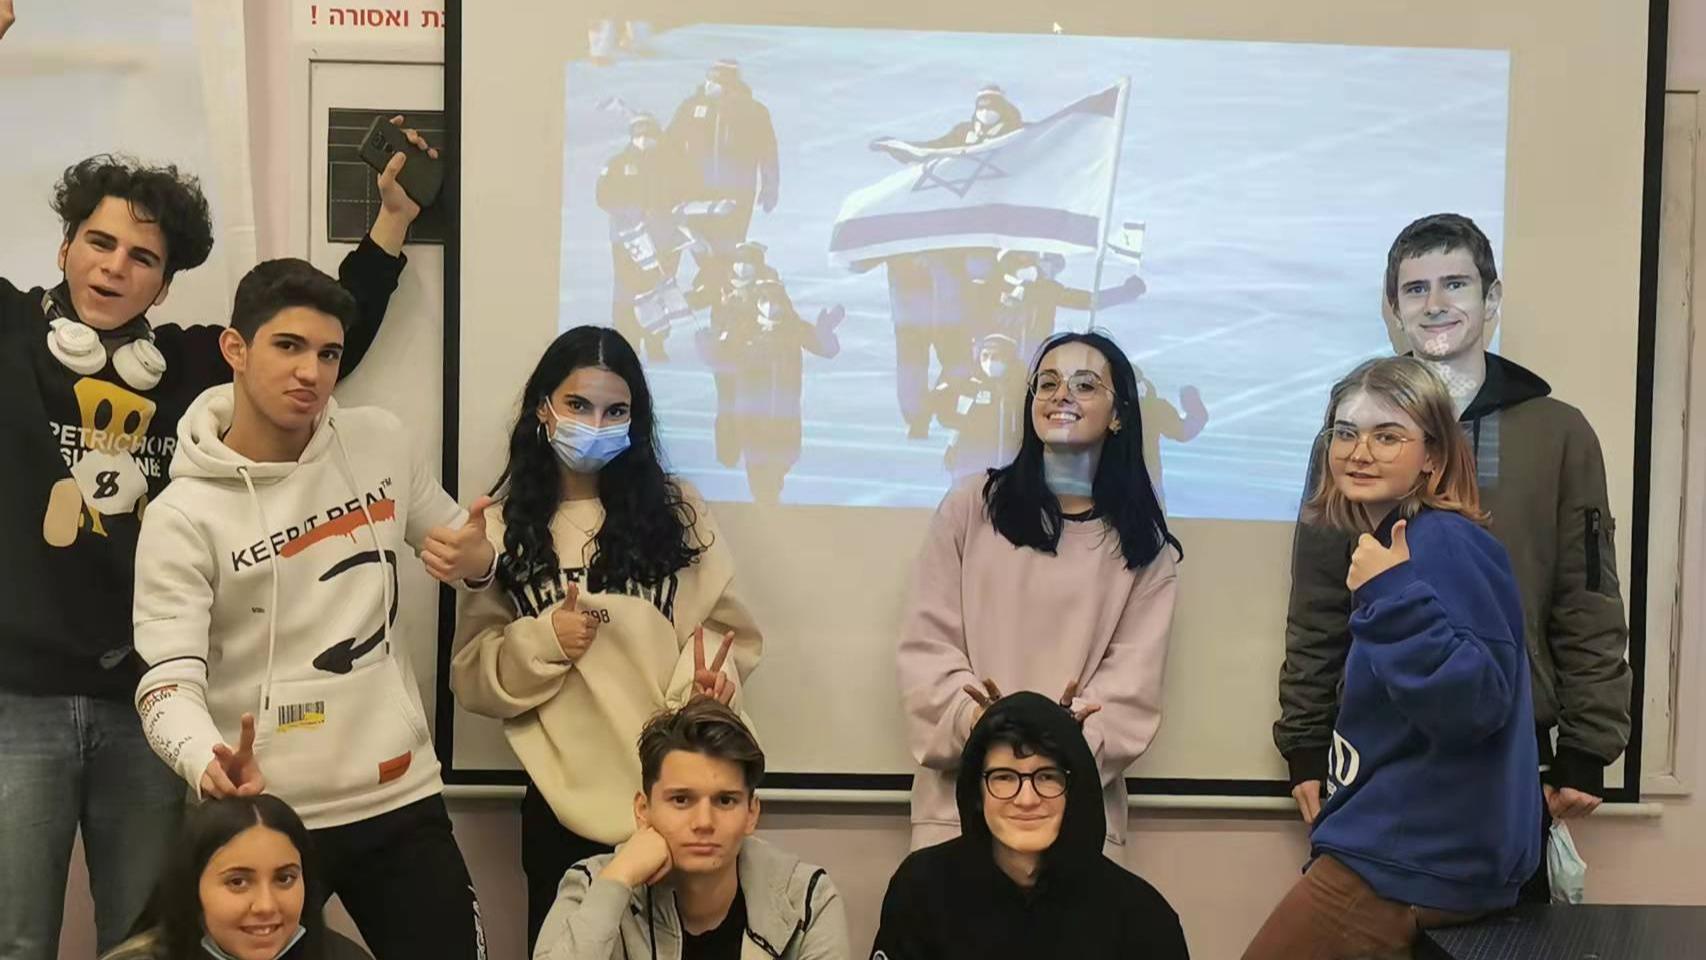 इजरायलका माध्यमिक विद्यालयका विद्यार्थीहरुद्वारा पैचिङ हिउँदे ओलम्पिकमाथि ध्यान